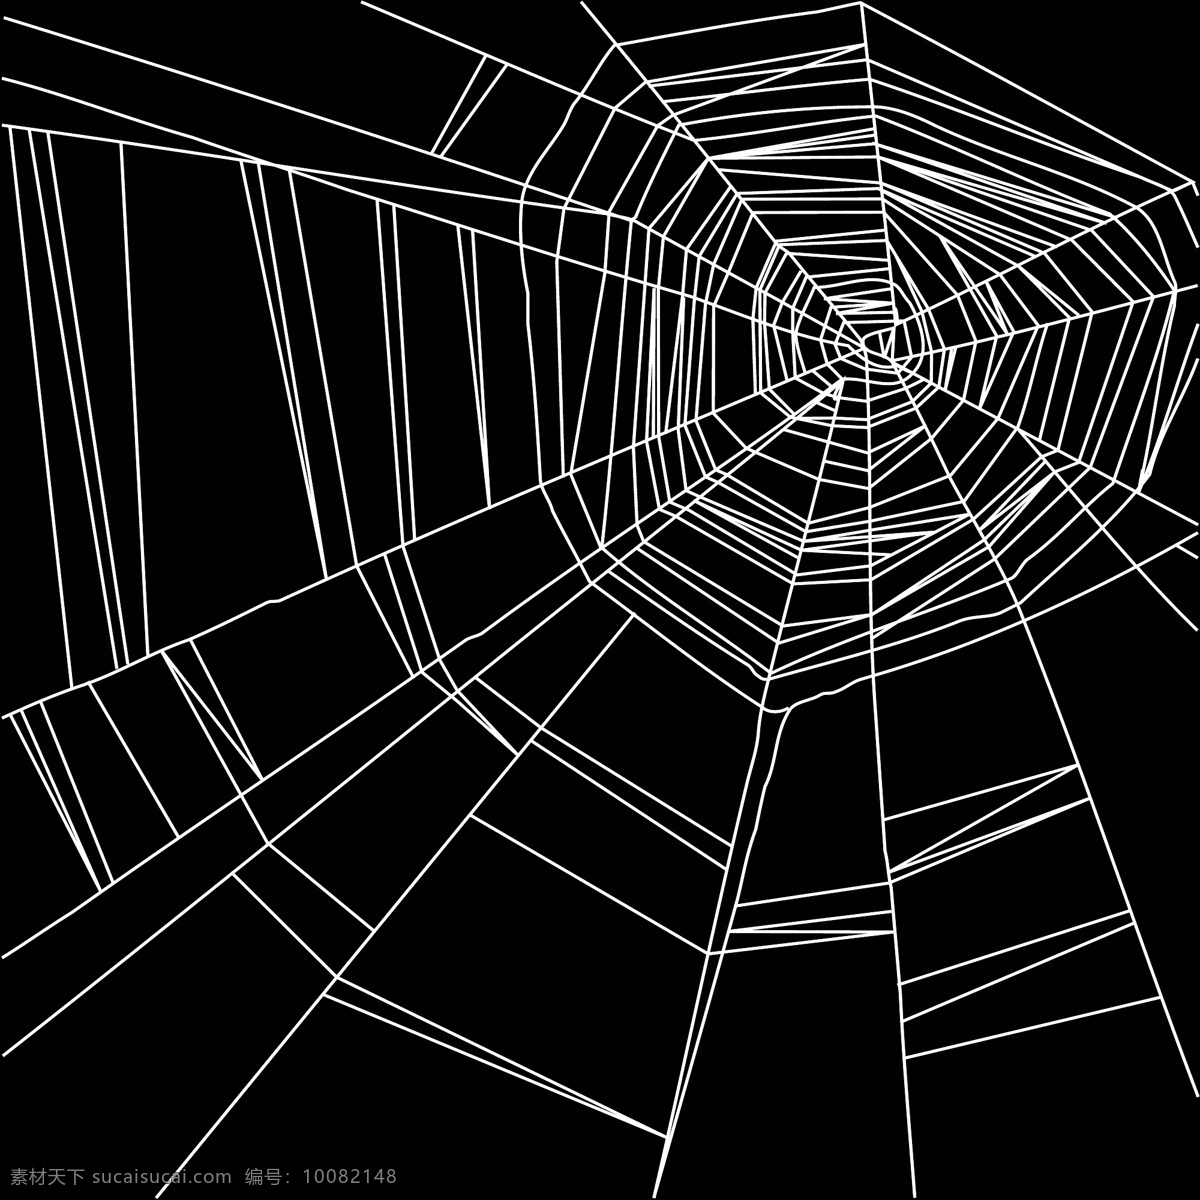 矢量 线条 蜘蛛网 背景 花纹 矢量素材 矢量蜘蛛网 矢量图 其他矢量图